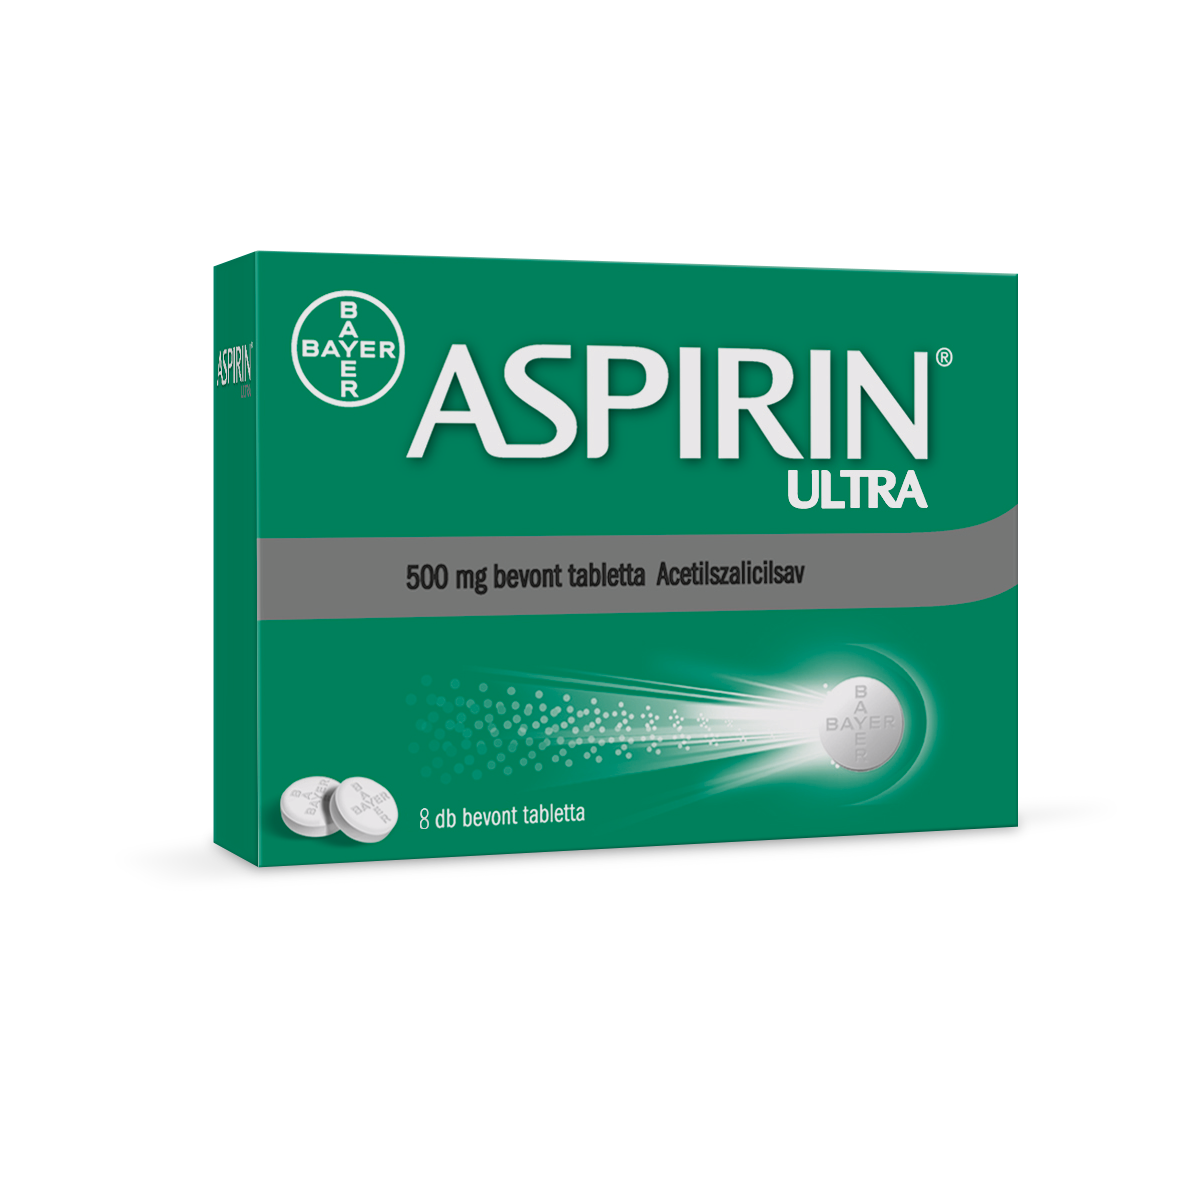 Aspirin® Ultra 500 mg bevont tabletta 8x